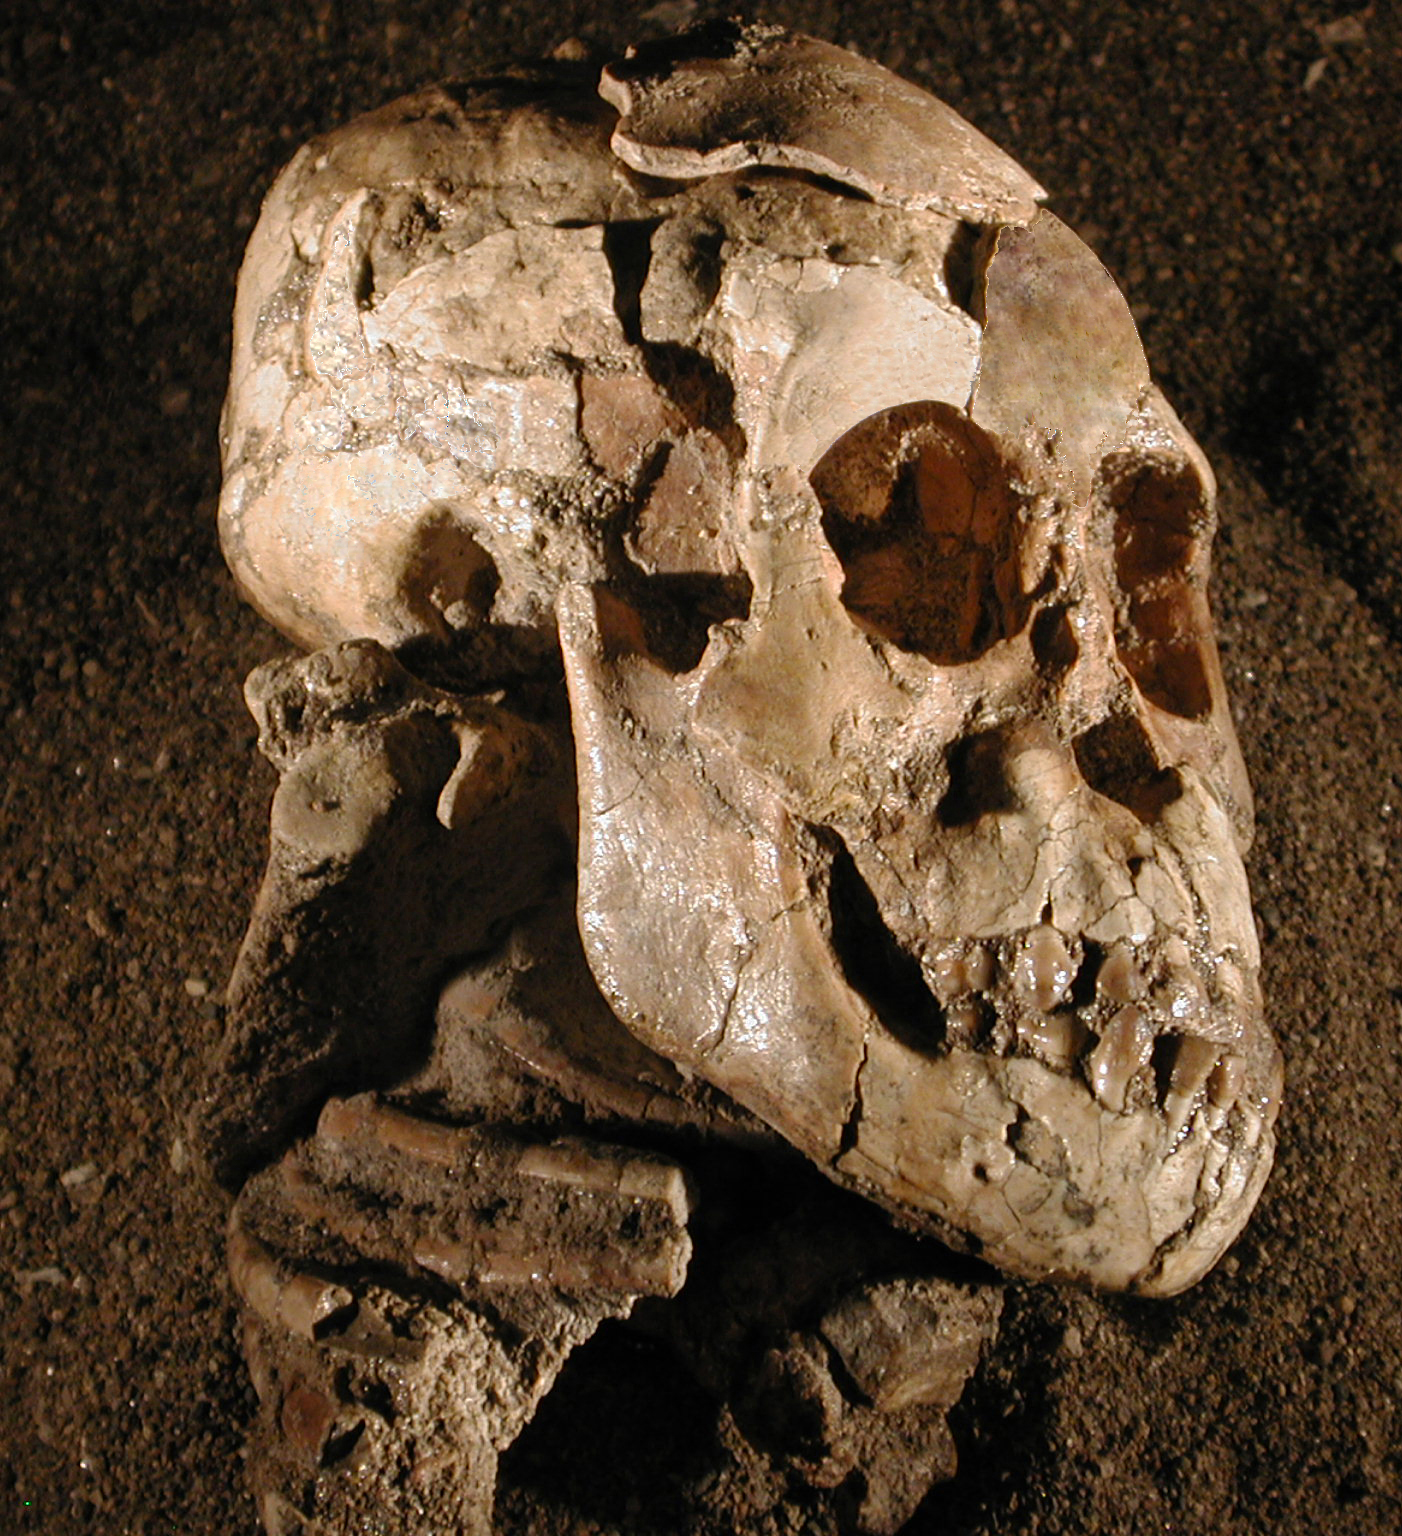 Vue latérale du crâne, de la face et de la mandibule de Selam, un Australopithecus afarensis de 3 ans ayant vécu voici 3,3 millions d’années. L’omoplate droite complète est visible, avec sa cavité glénoïde, son acromion et son processus coracoïde, sous l’arrière du crâne, à gauche de la mâchoire et au-dessus des côtes. © Zeray Alemseged, Dikika Research Project